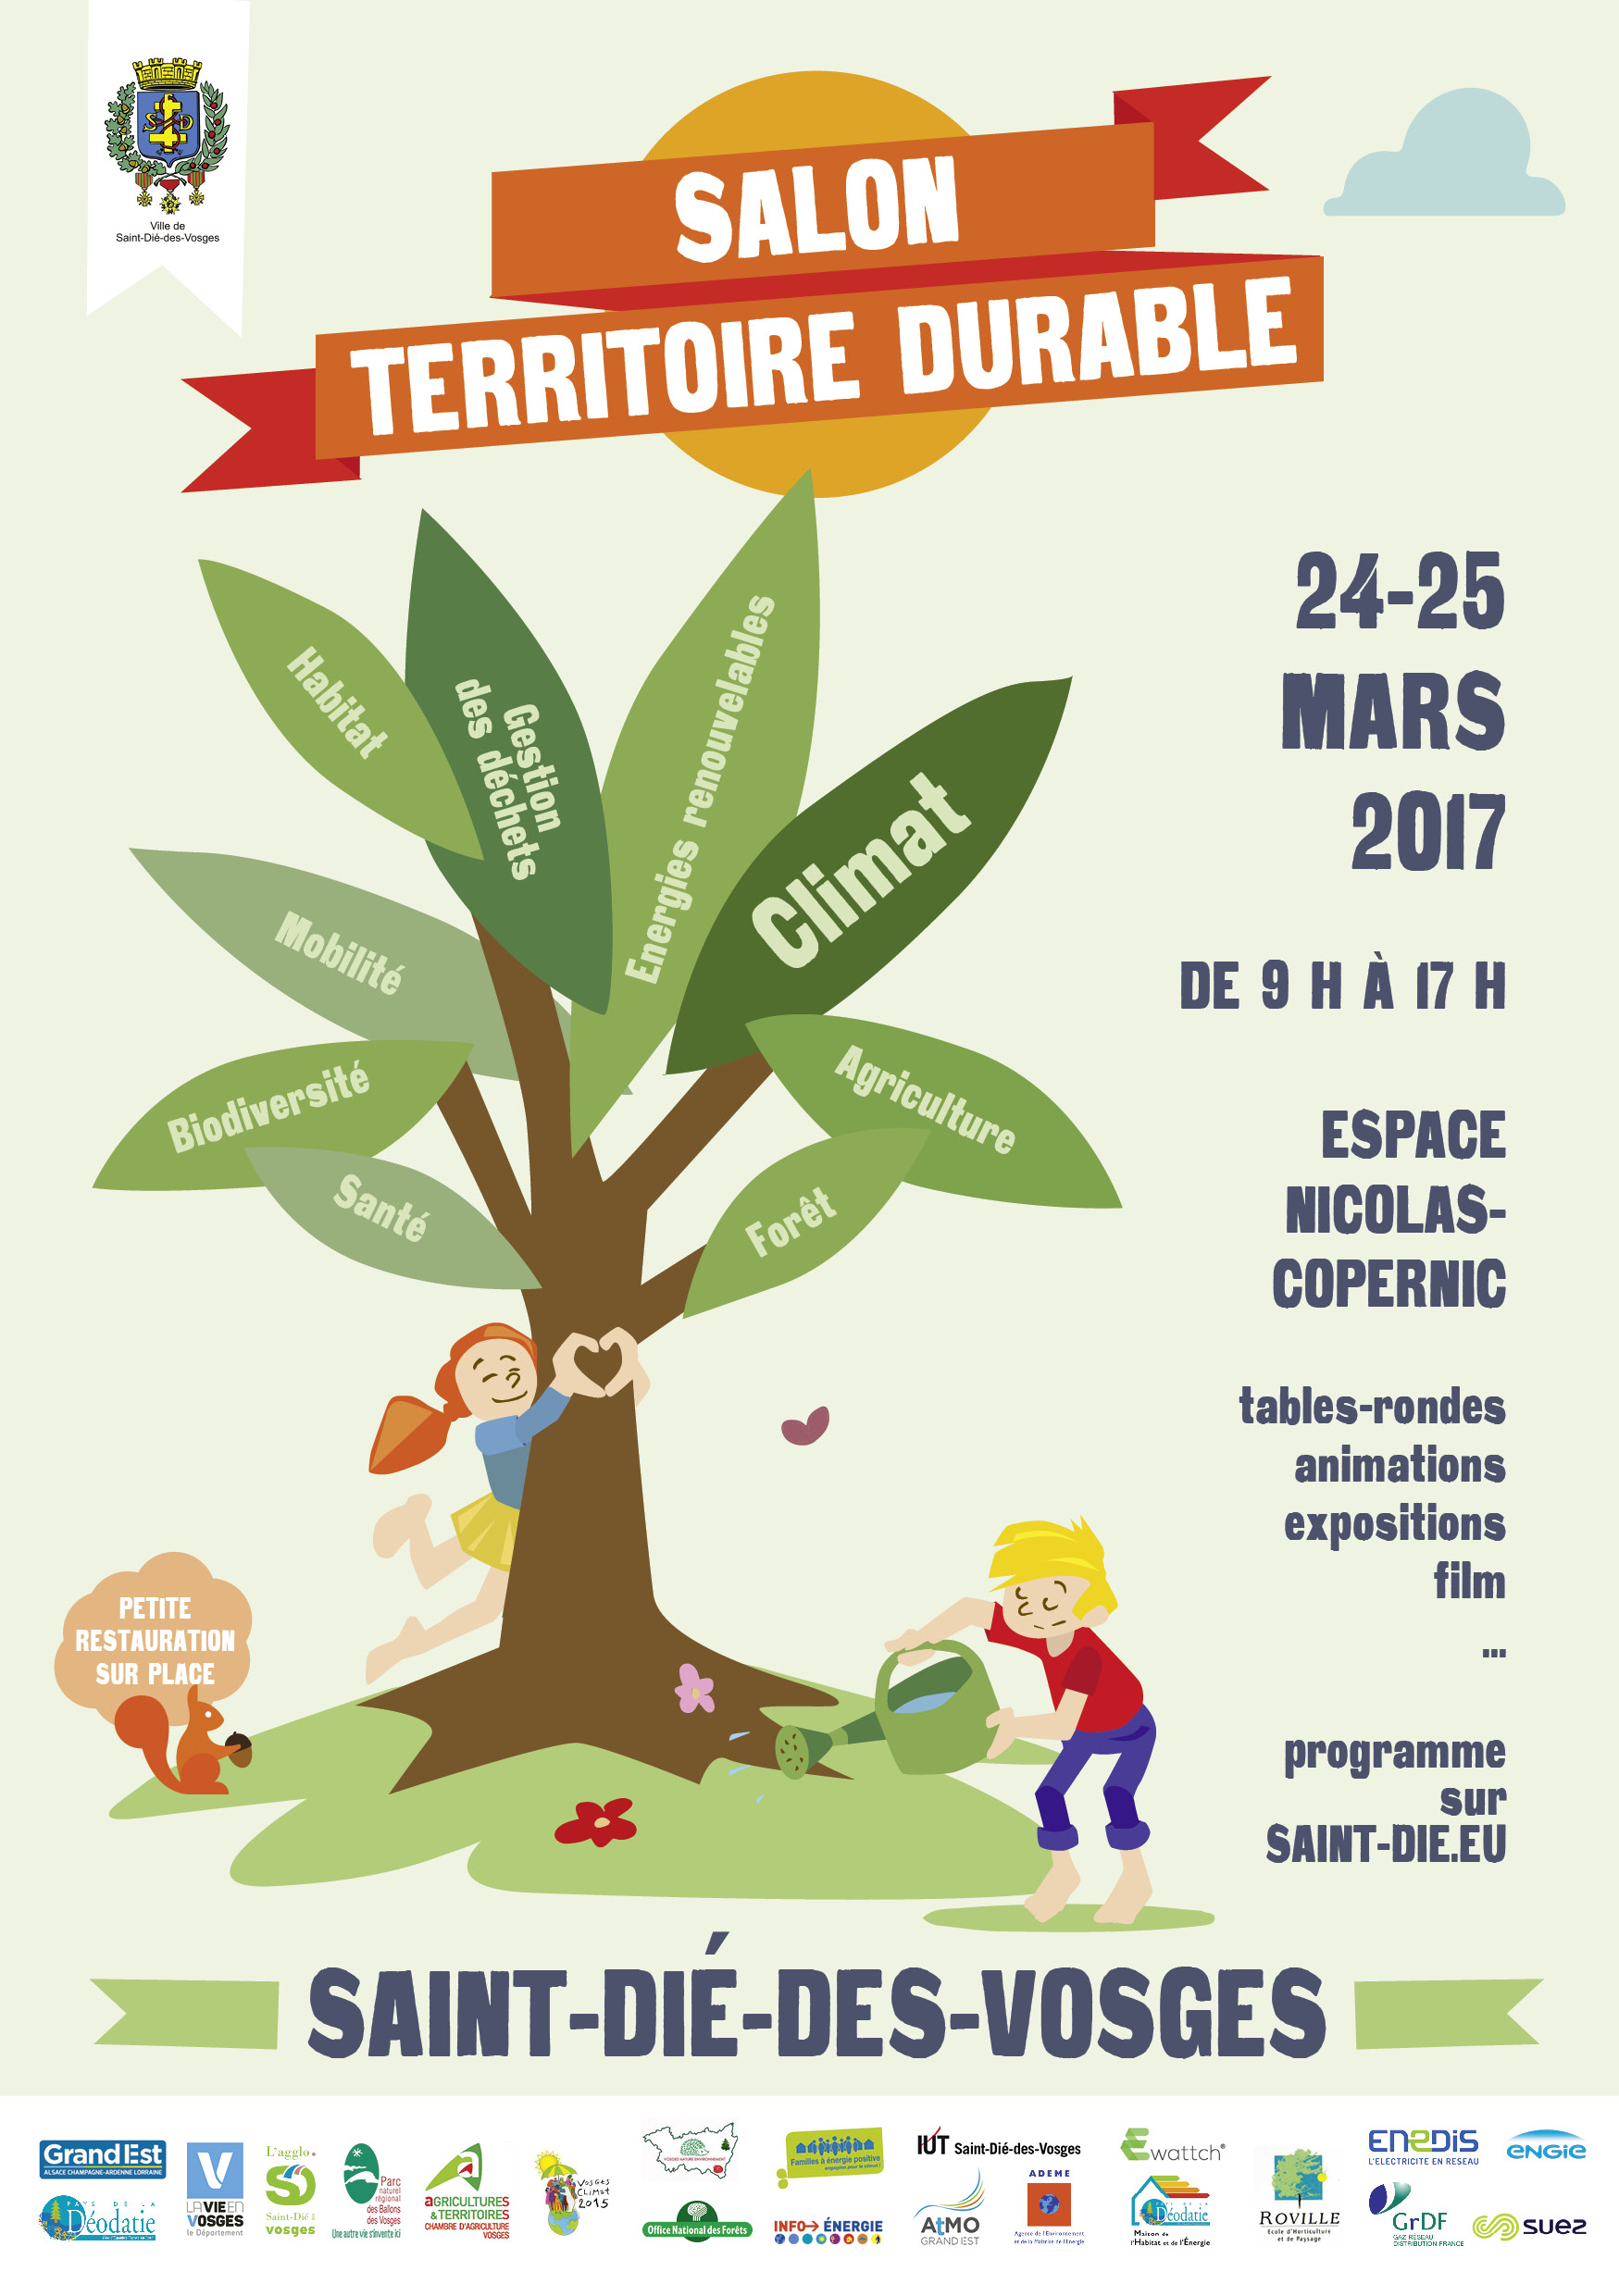 Salon du Territoire durable à Saint-Dié les 24-25 mars